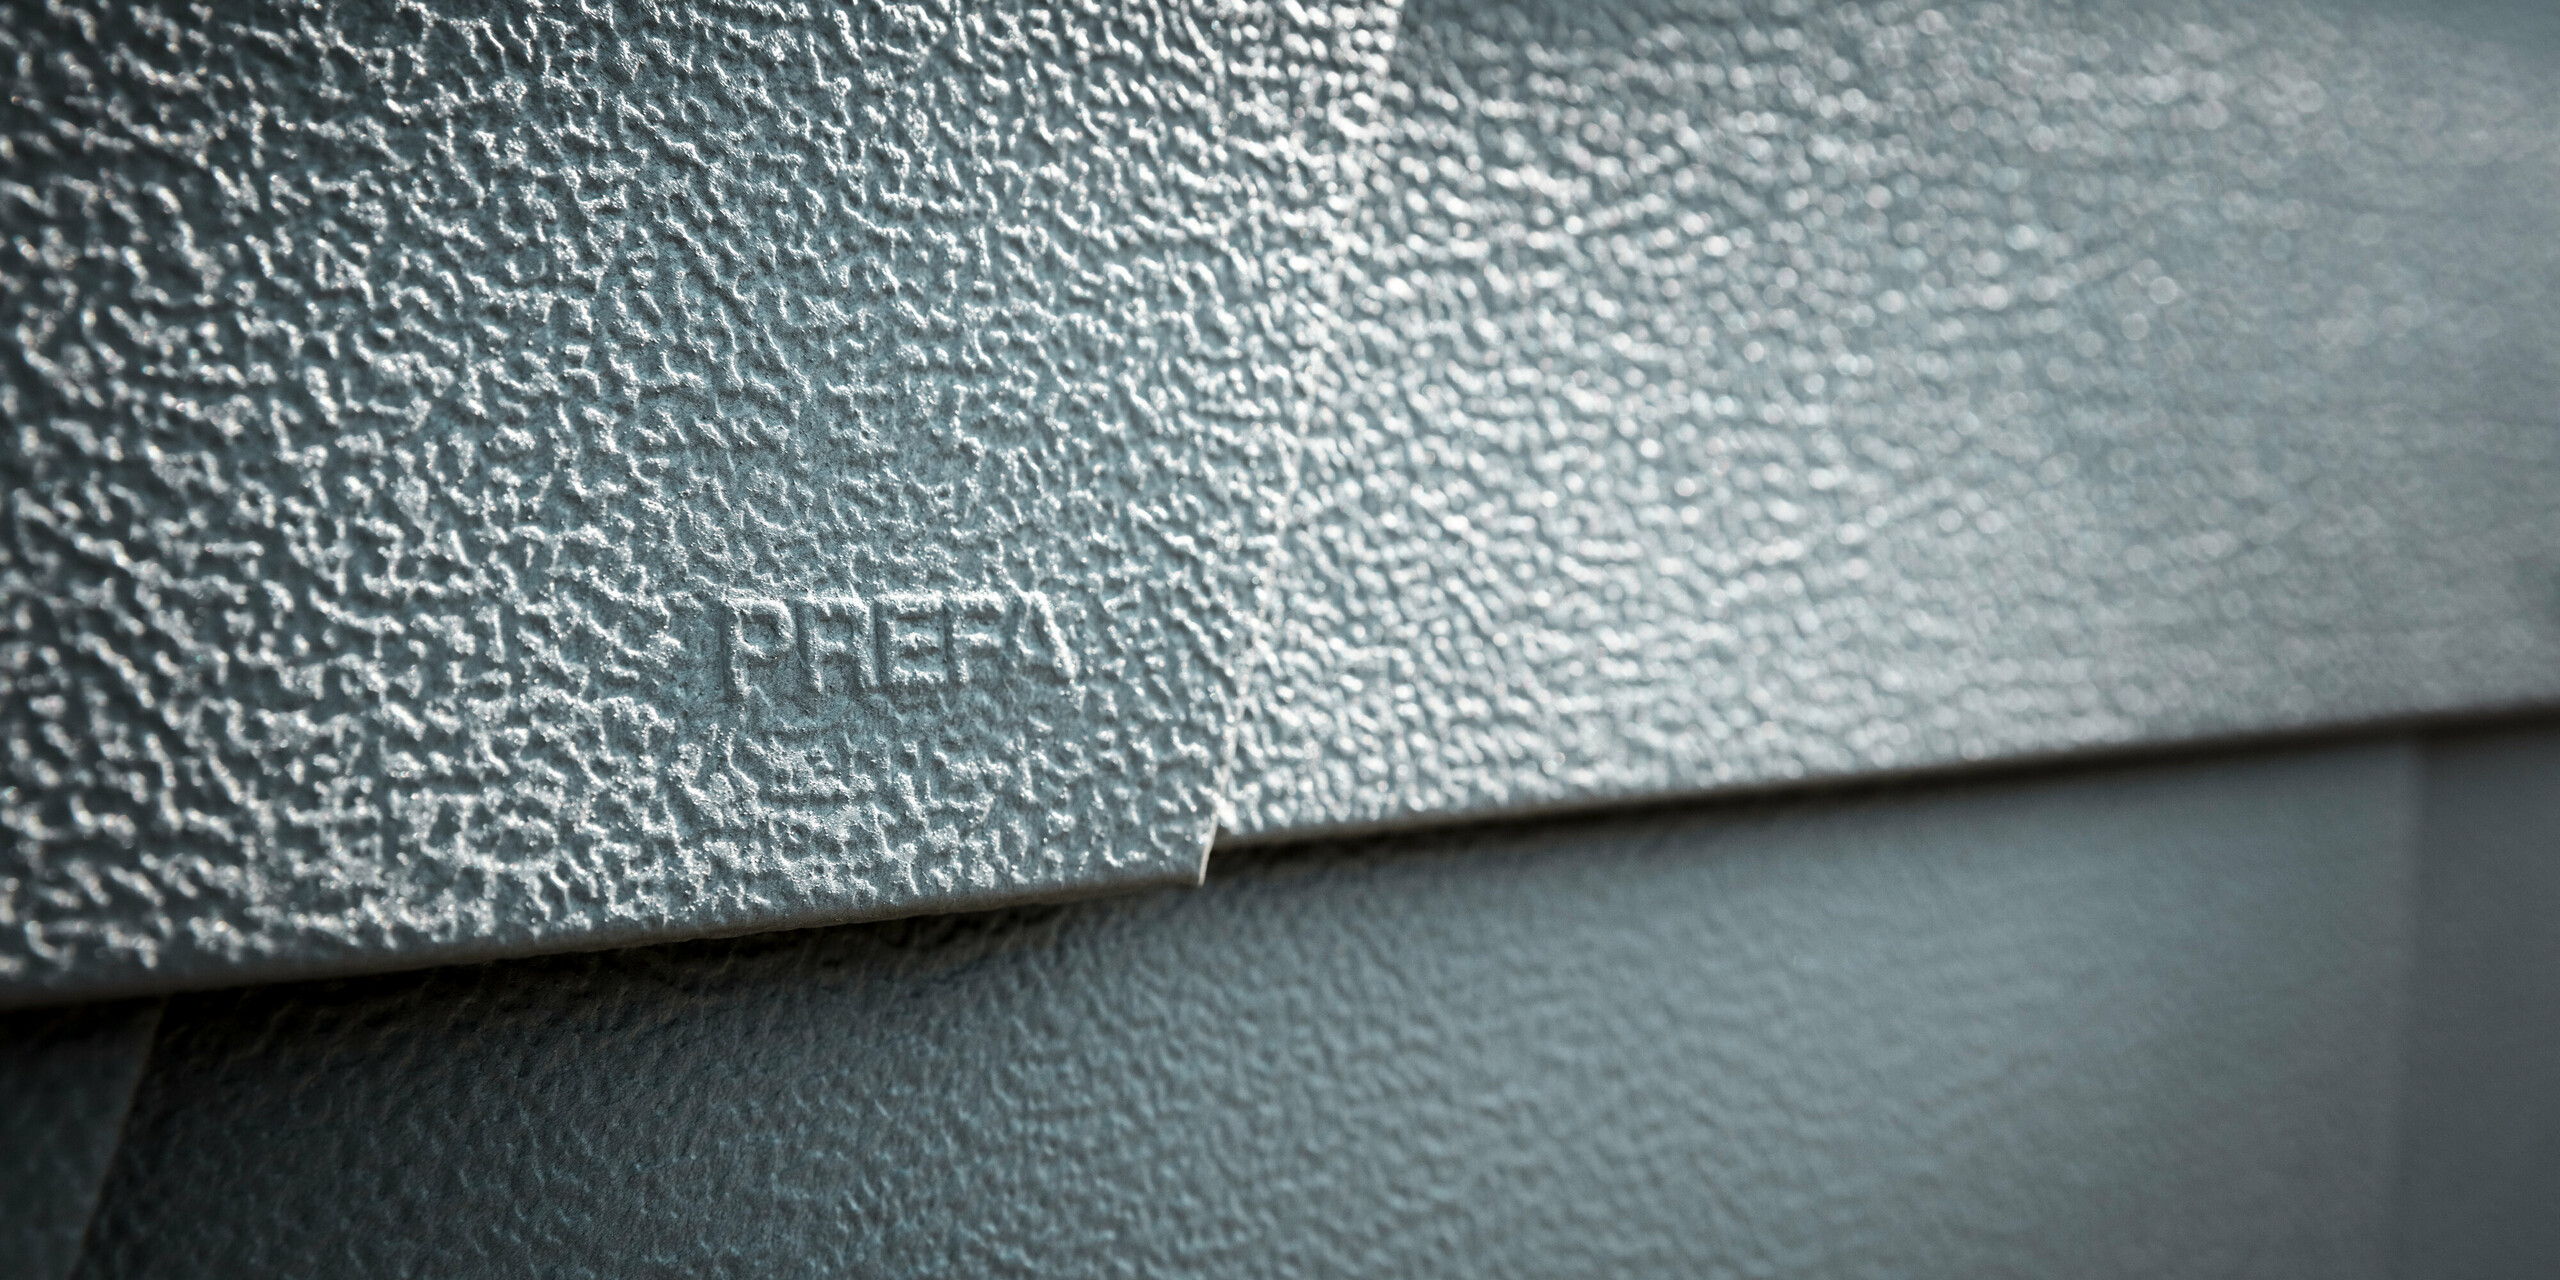 Detailaufnahme einer PREFA Dachschindel in P.10 Hellgrau, die mit ihrer strukturierten Oberfläche und dem eingestanzten Wort „PREFA“ Qualität und Markenbewusstsein demonstriert. Diese Aufnahme zeigt die robuste Beschaffenheit und die anspruchsvolle Textur der Aluminiumschindel, welche die Langlebigkeit und Witterungsbeständigkeit von PREFA Produkten widerspiegelt und für zeitgenössische sowie funktionale Dach- und Fassadengestaltung steht.